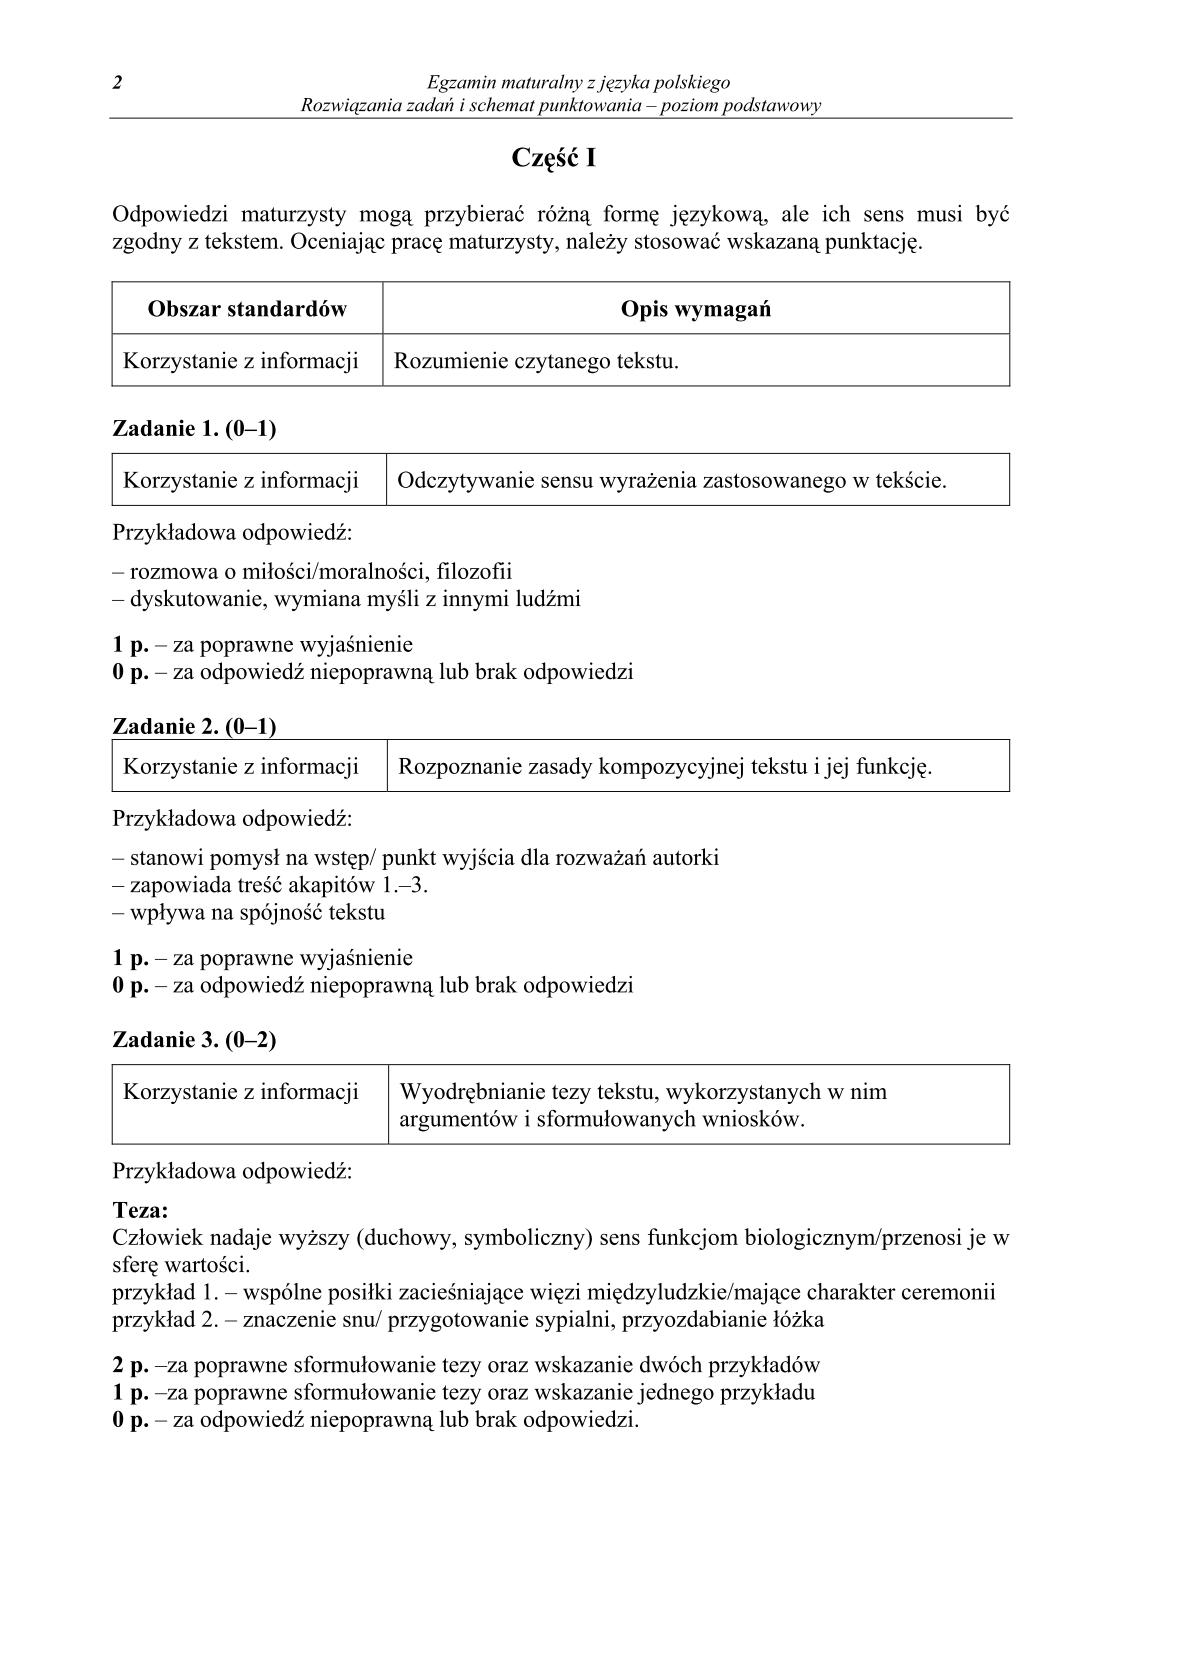 odpowiedzi-jezyk-polski-dla-osob-nieslyszacych-matura-2014-str.2